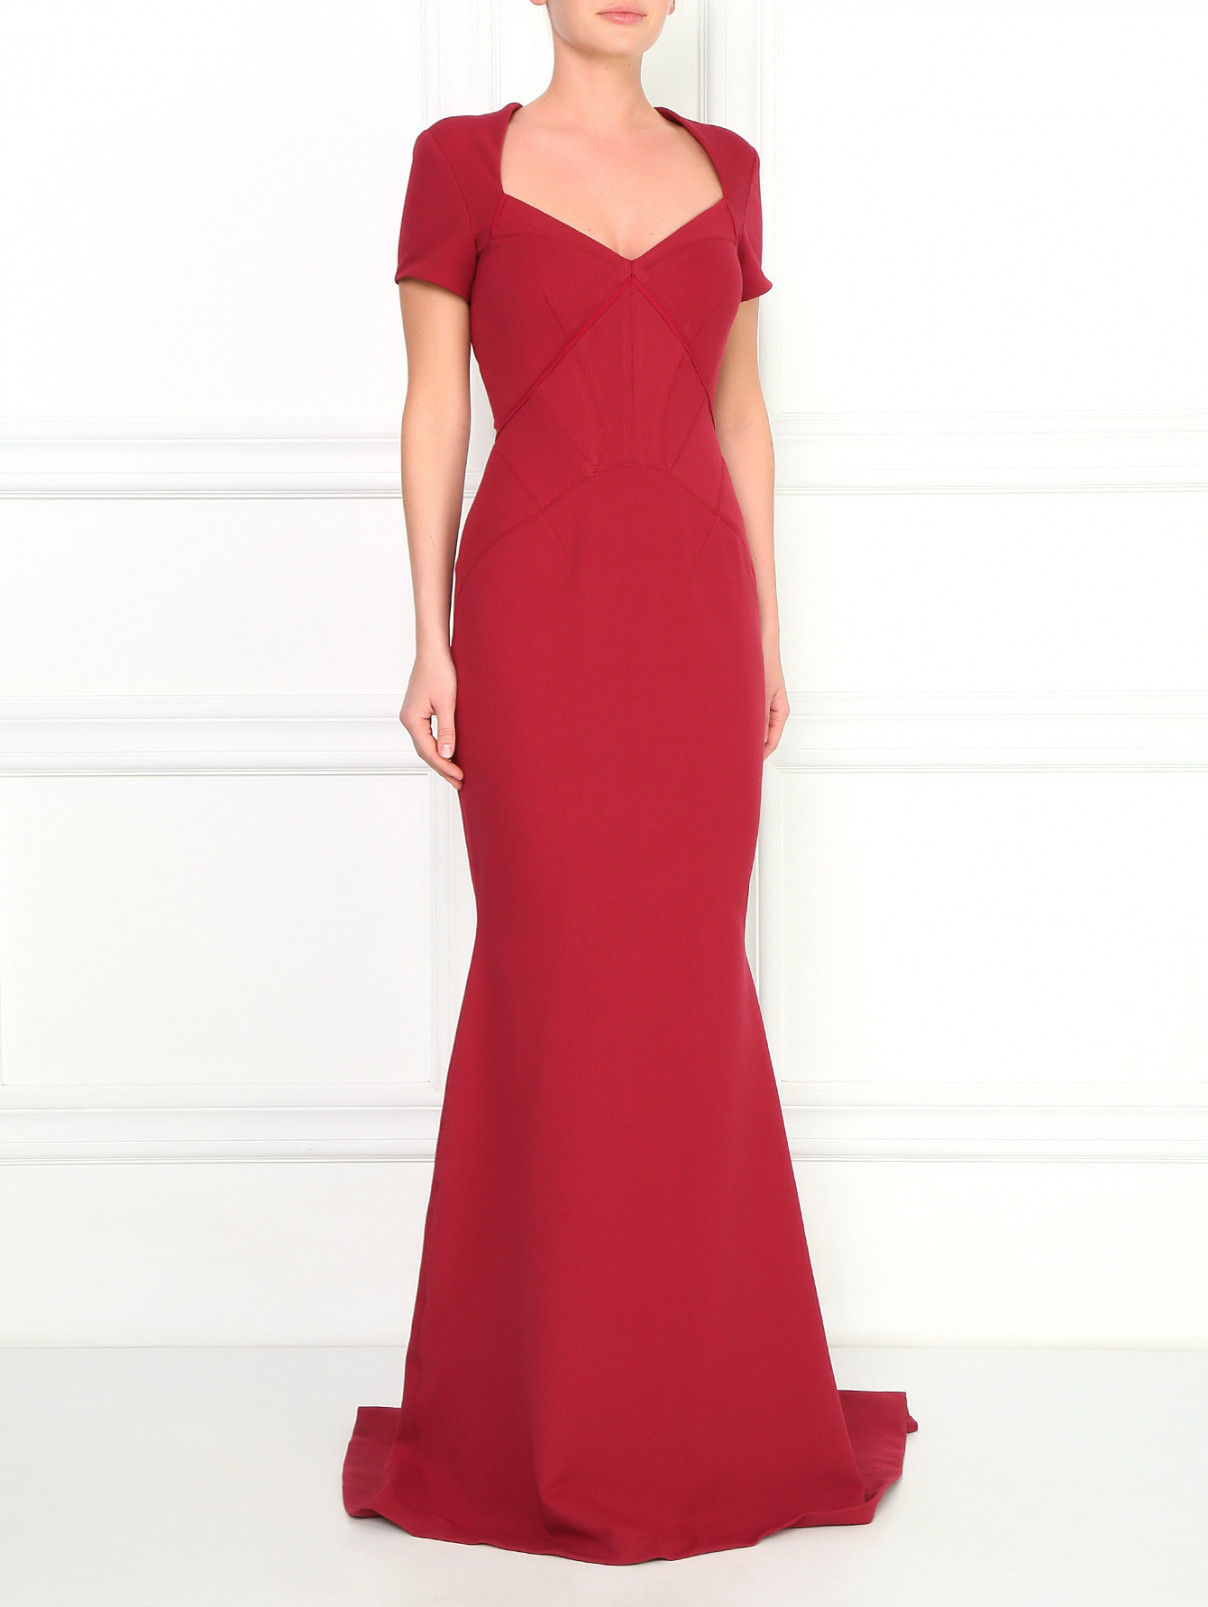 Платье-макси со шлейфом Zac Posen  –  Модель Общий вид  – Цвет:  Красный